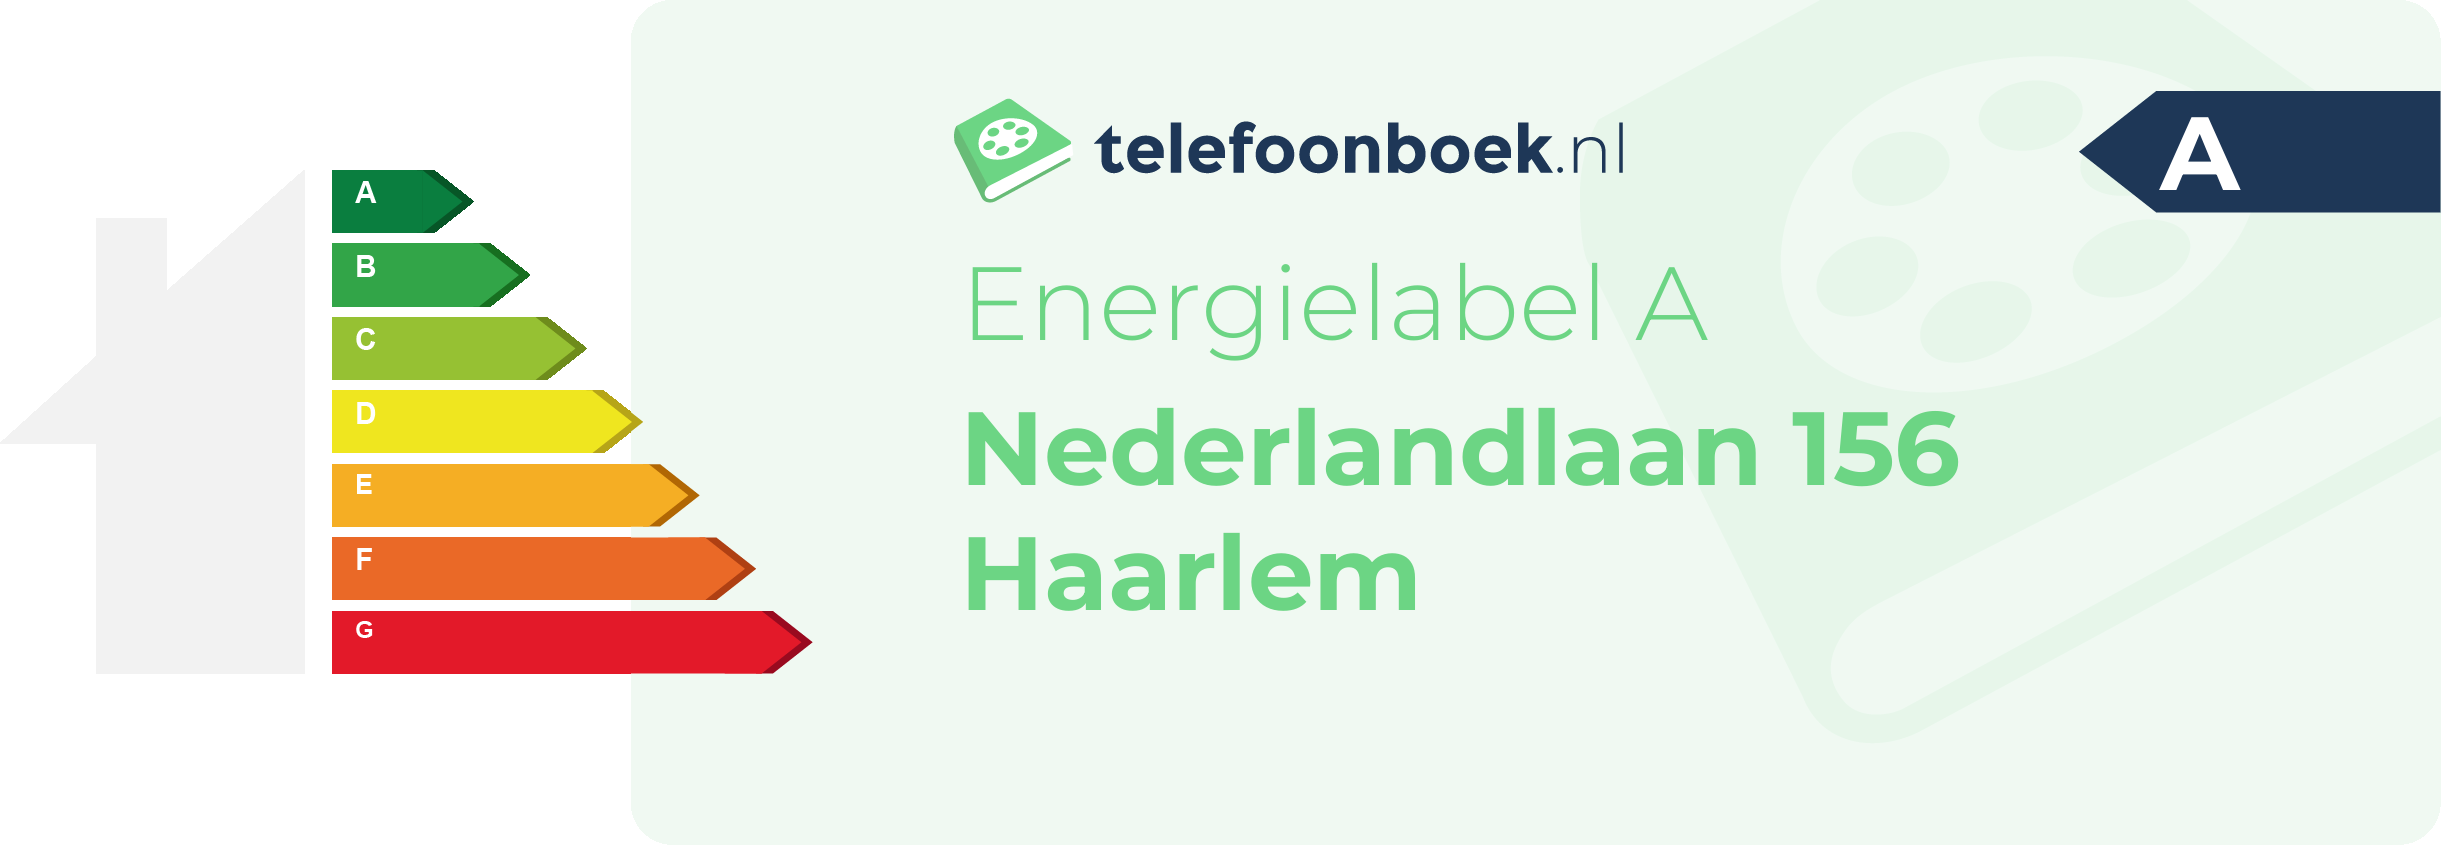 Energielabel Nederlandlaan 156 Haarlem